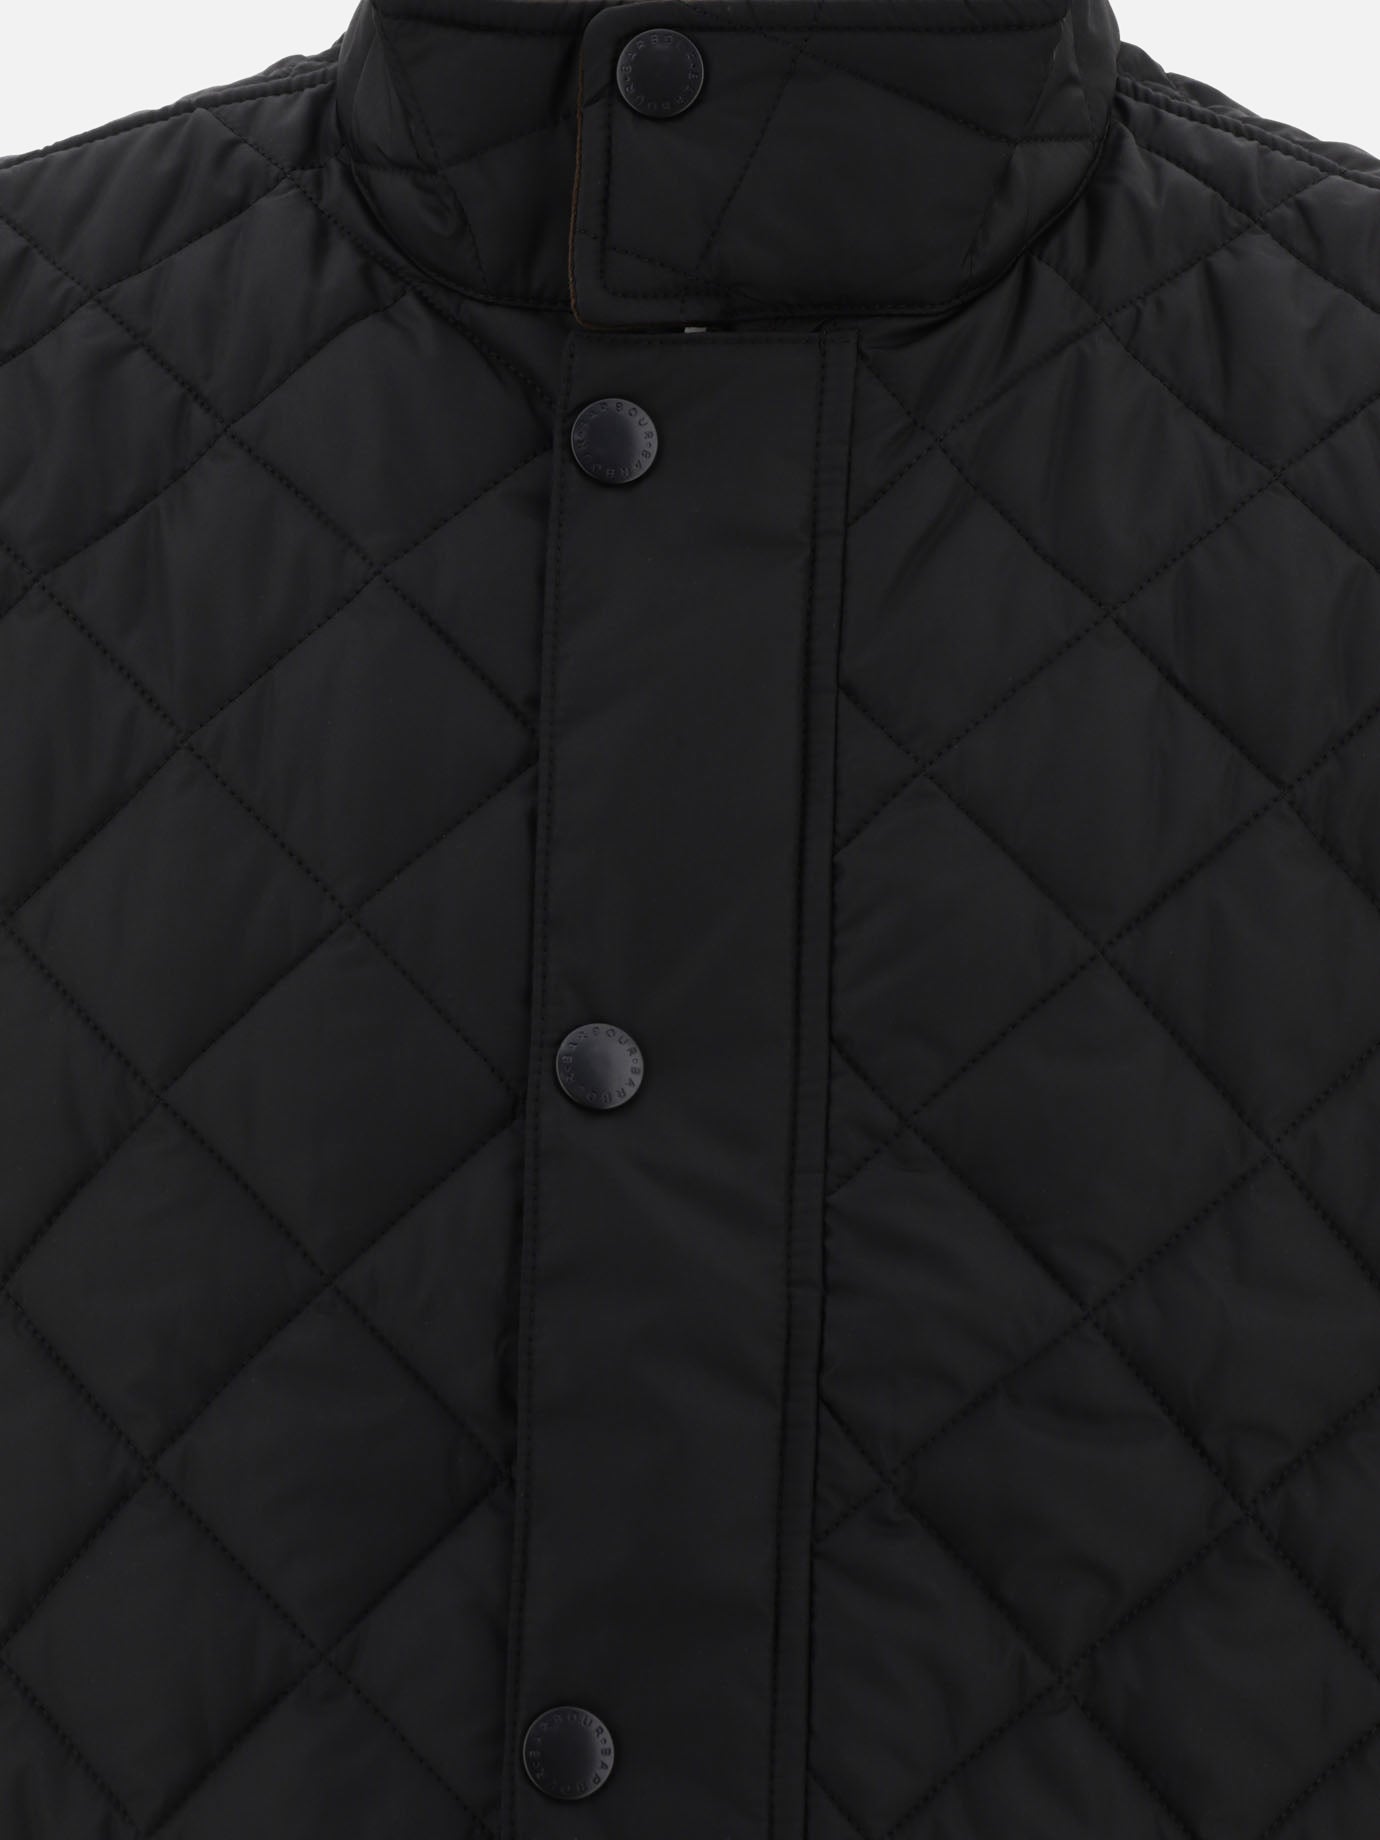 "Lowerdale" vest jacket